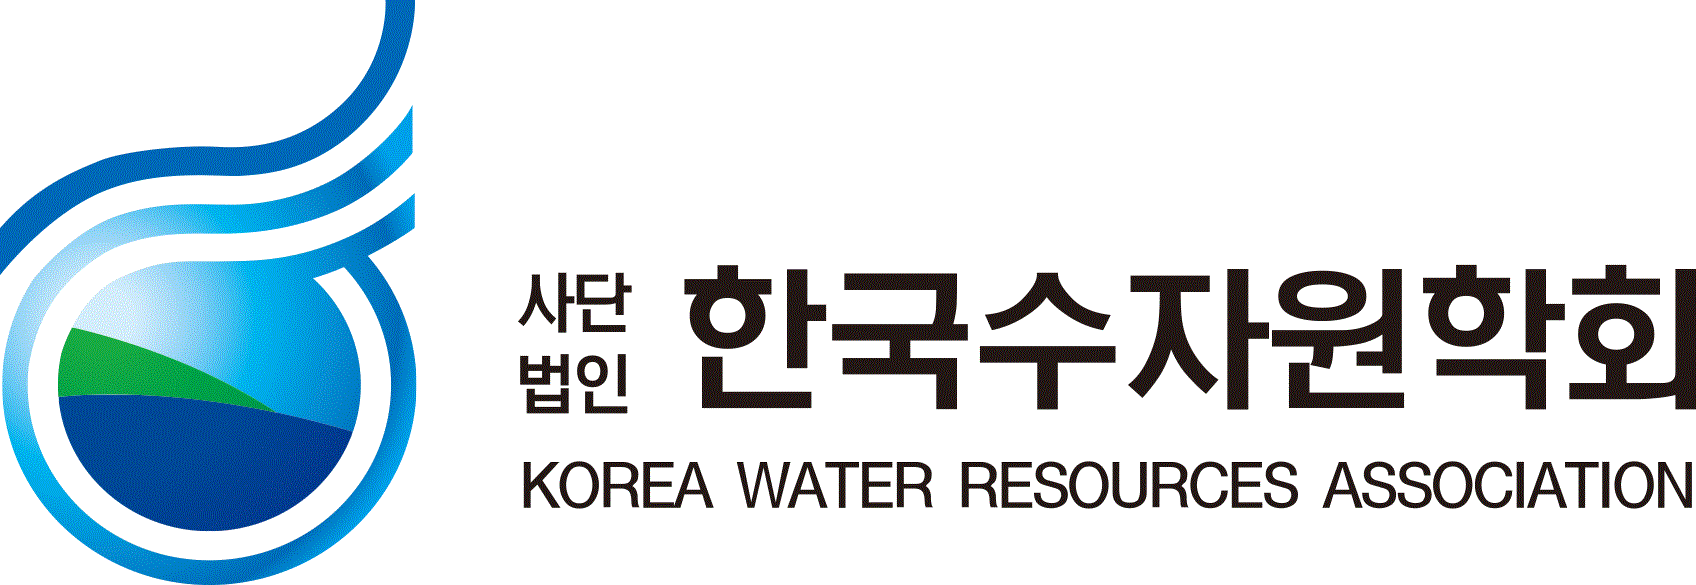 한국수자원학회